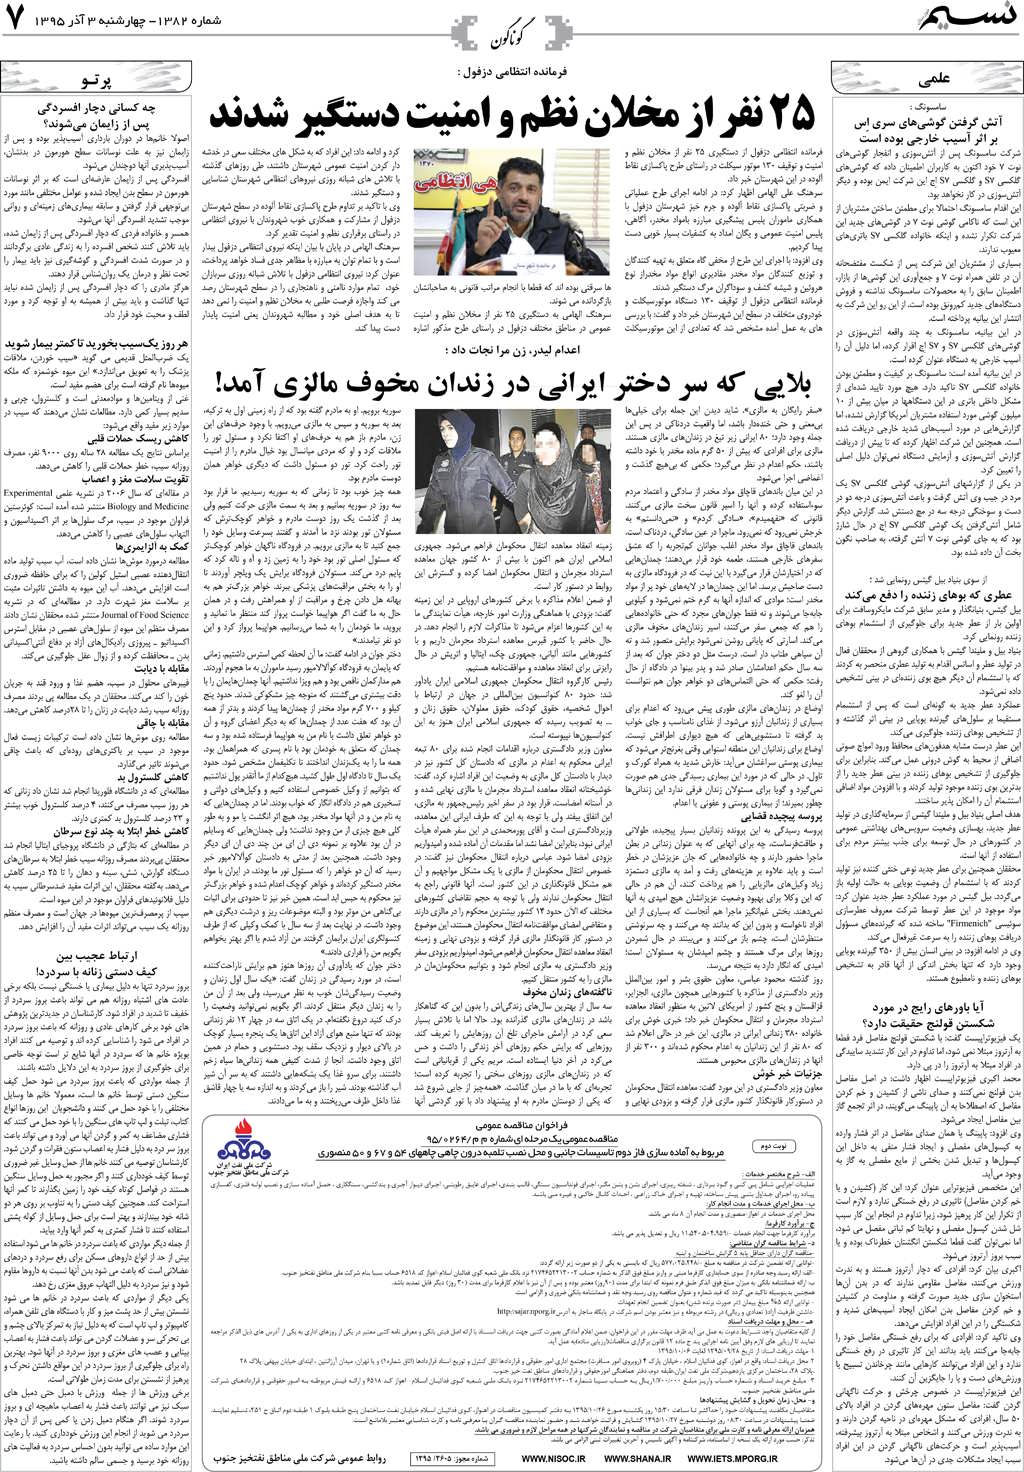 صفحه گوناگون روزنامه نسیم شماره 1382